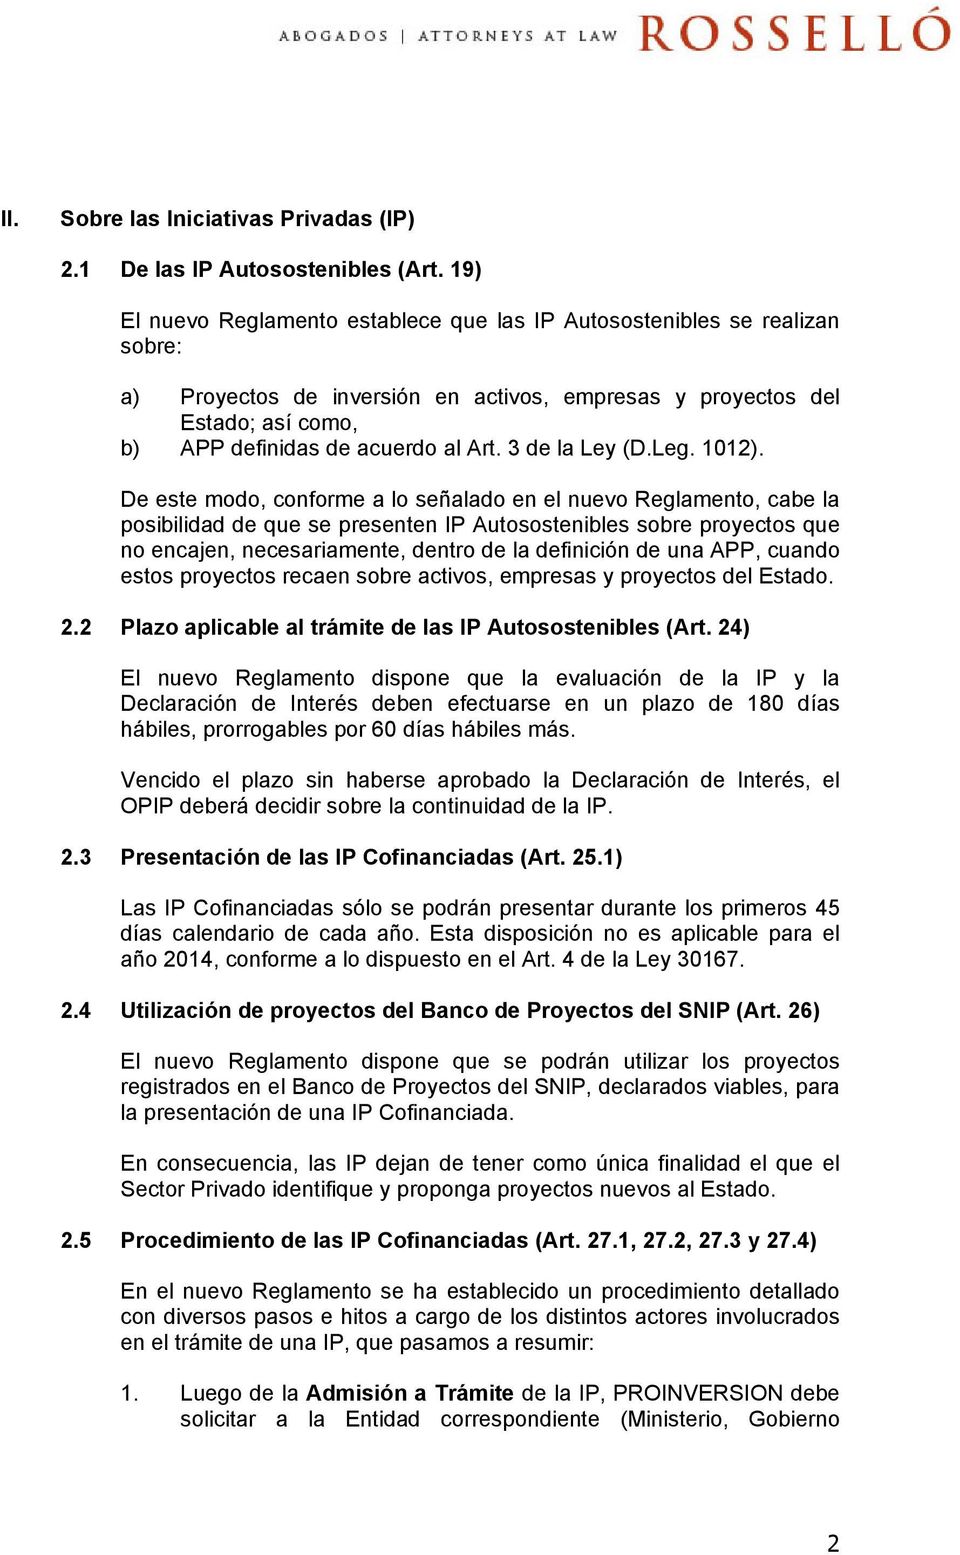 3 de la Ley (D.Leg. 1012).